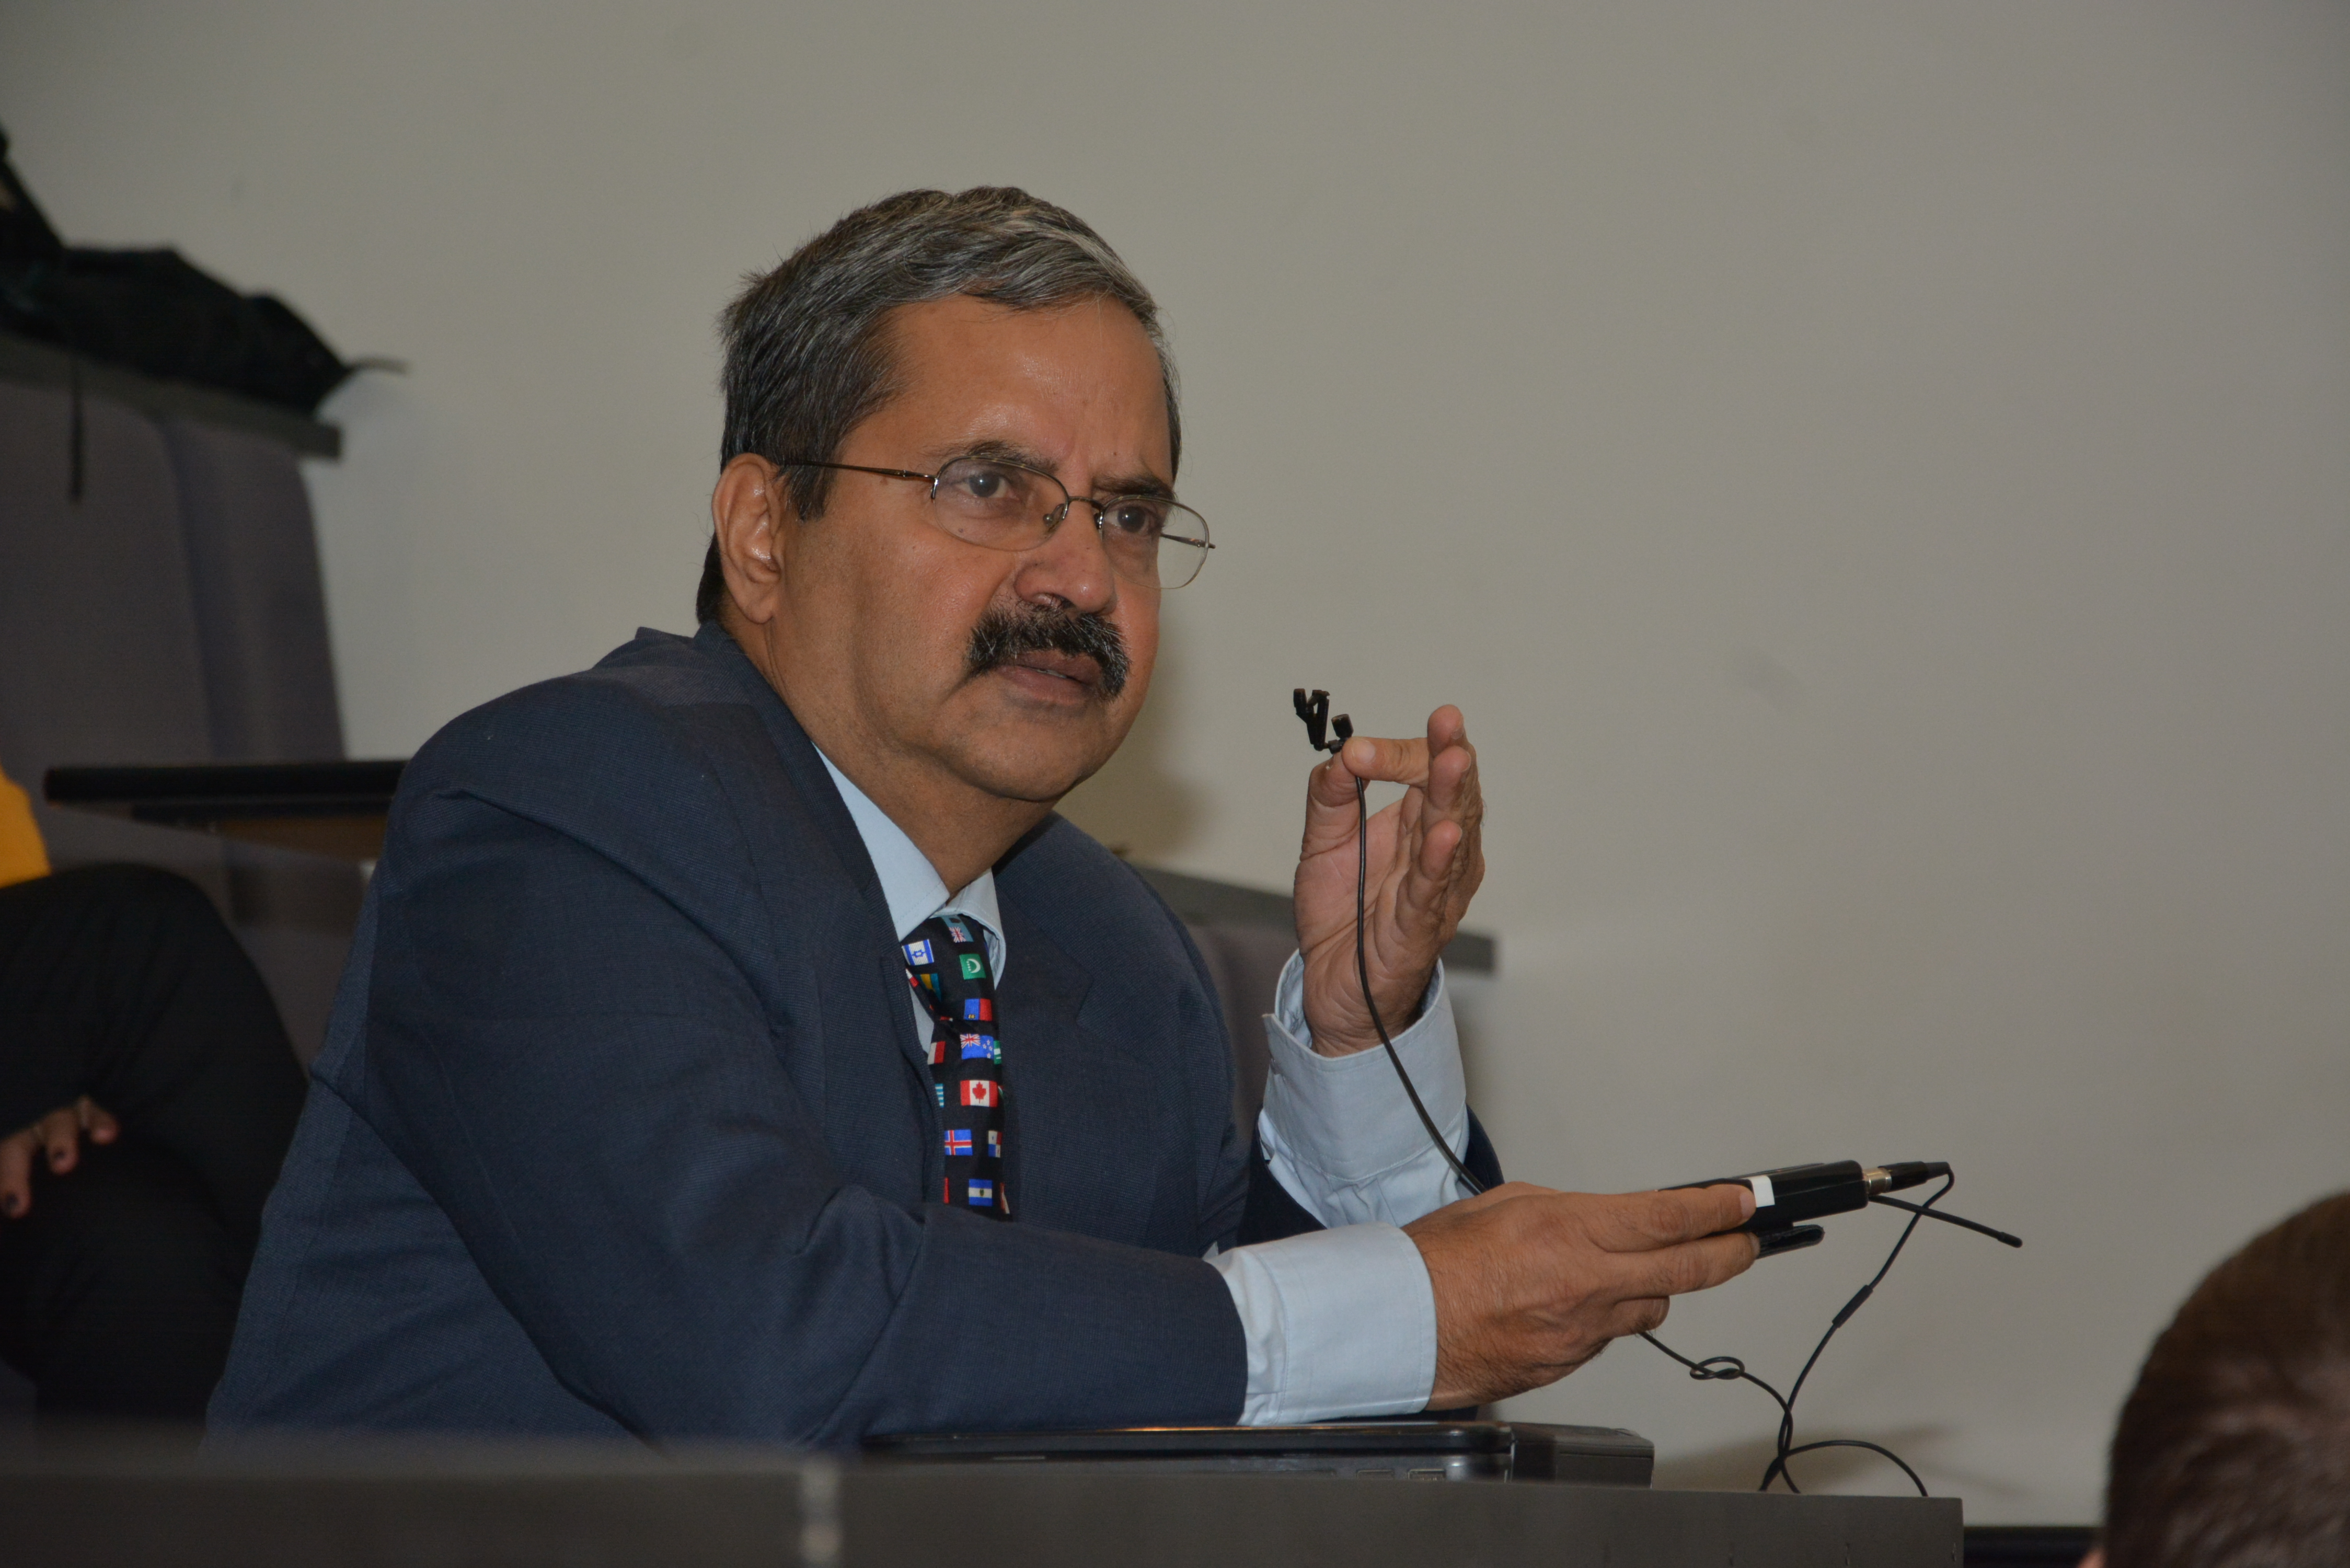 Prof. G L Sivakumar Babu – chair of TC302